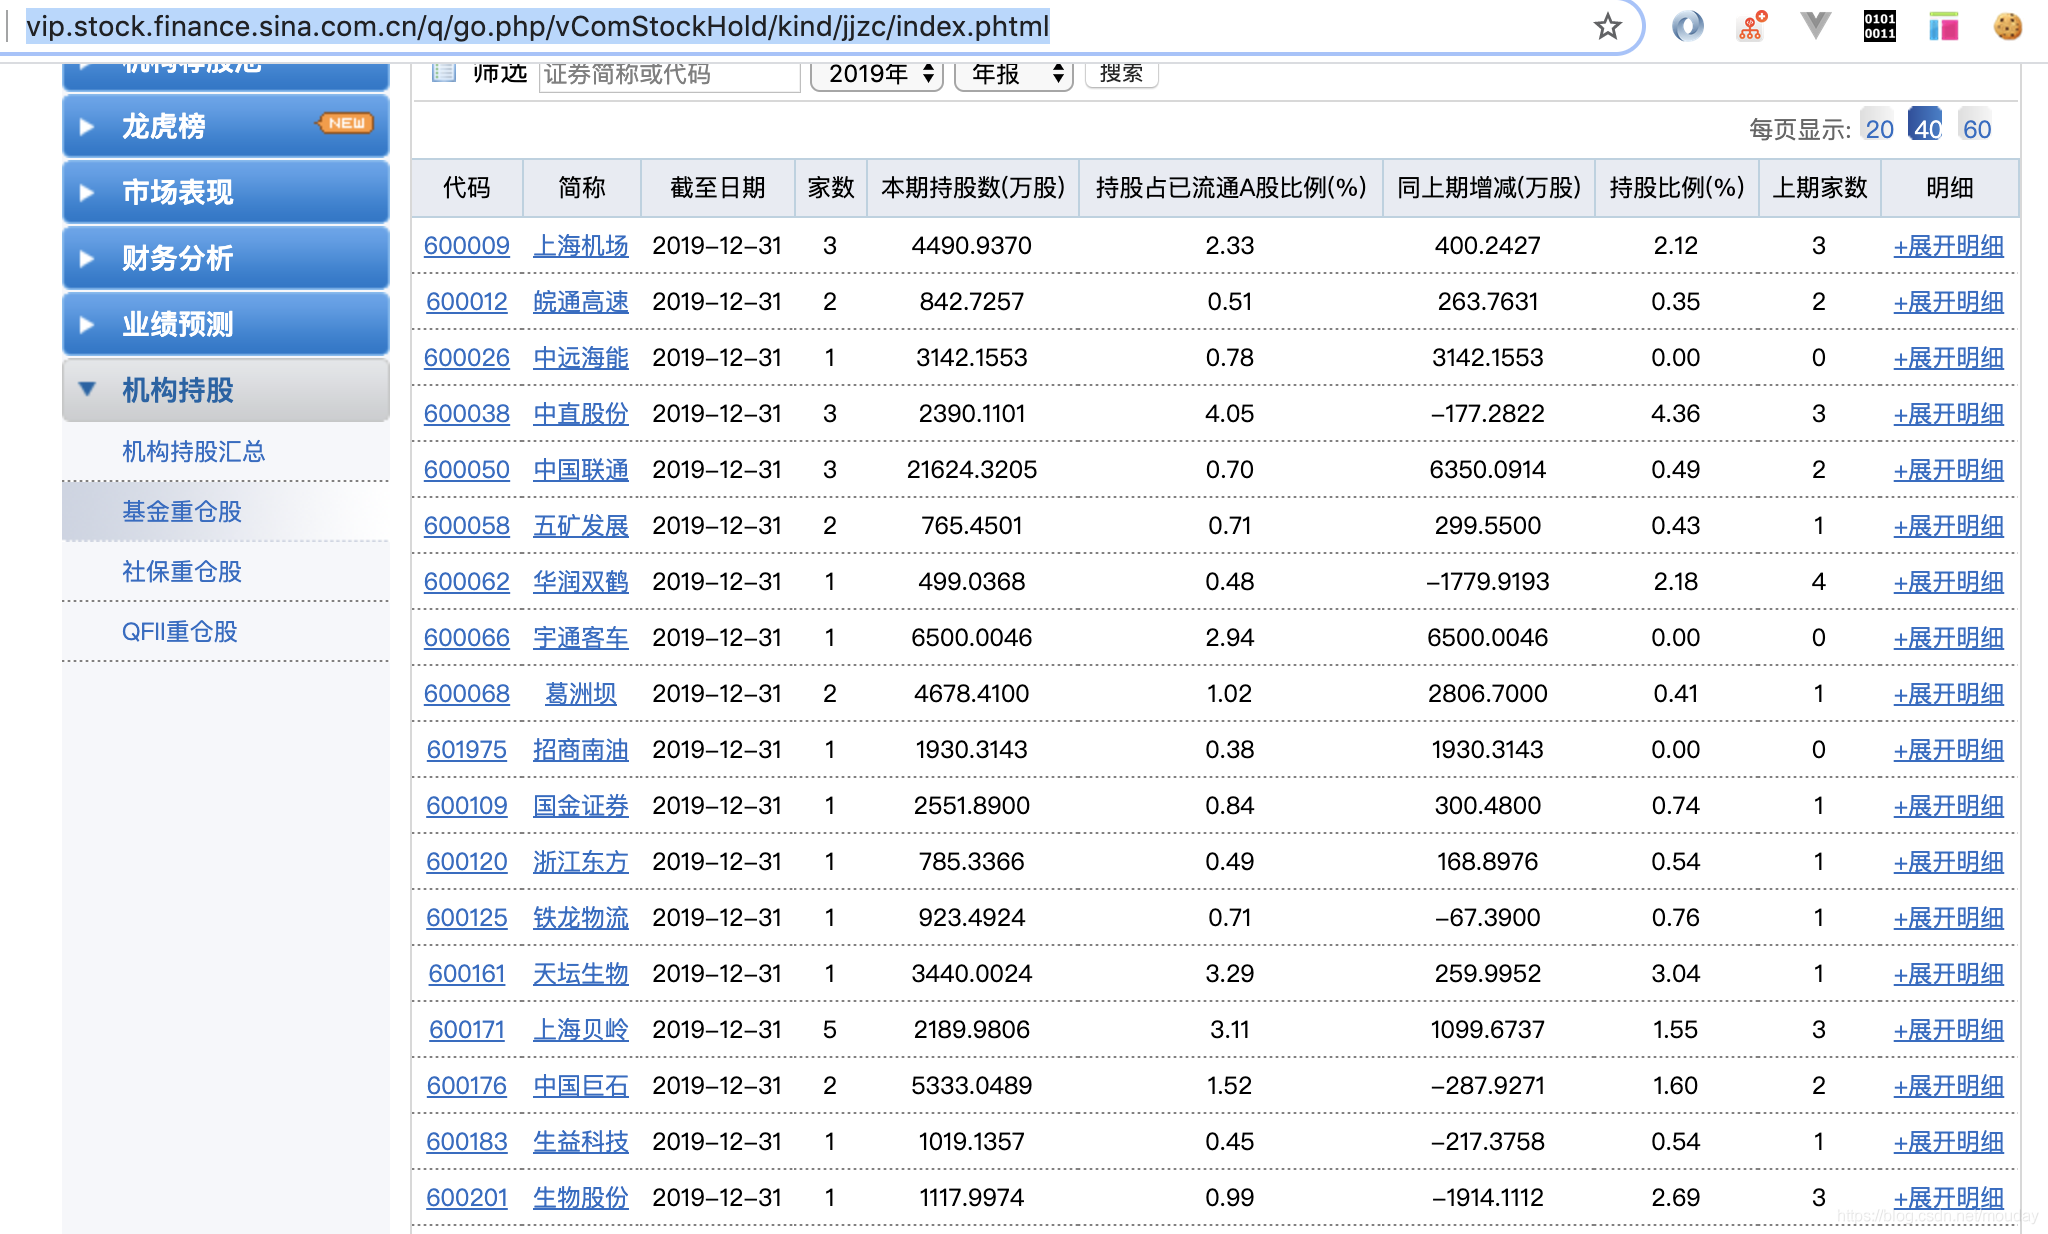 使用Pandas的read_html方法读取网页Table表格数据